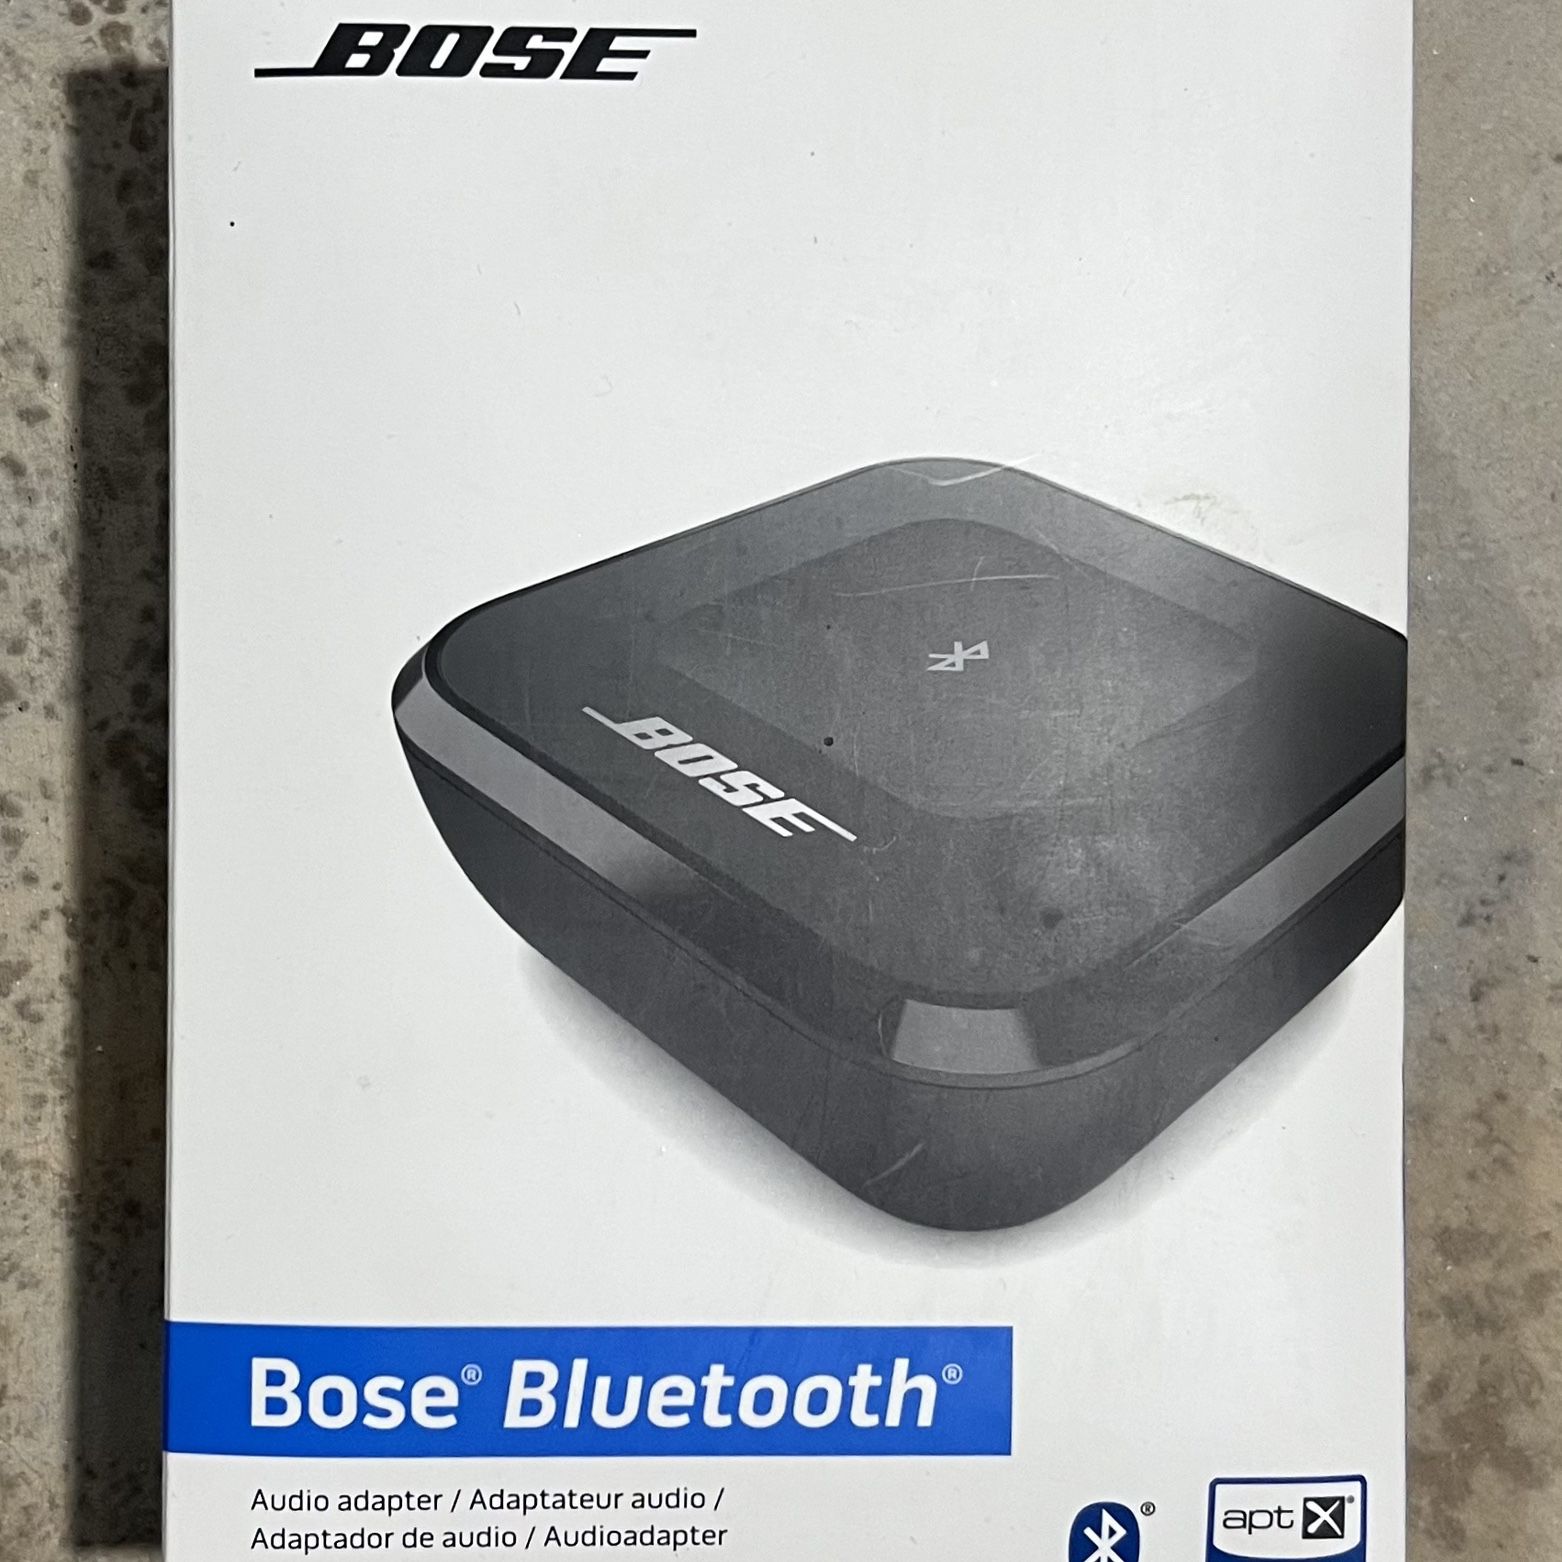 søsyge lobby Begrænsning Bose Bluetooth Audio Adapter for Sale in Darlingtn Hts, VA - OfferUp